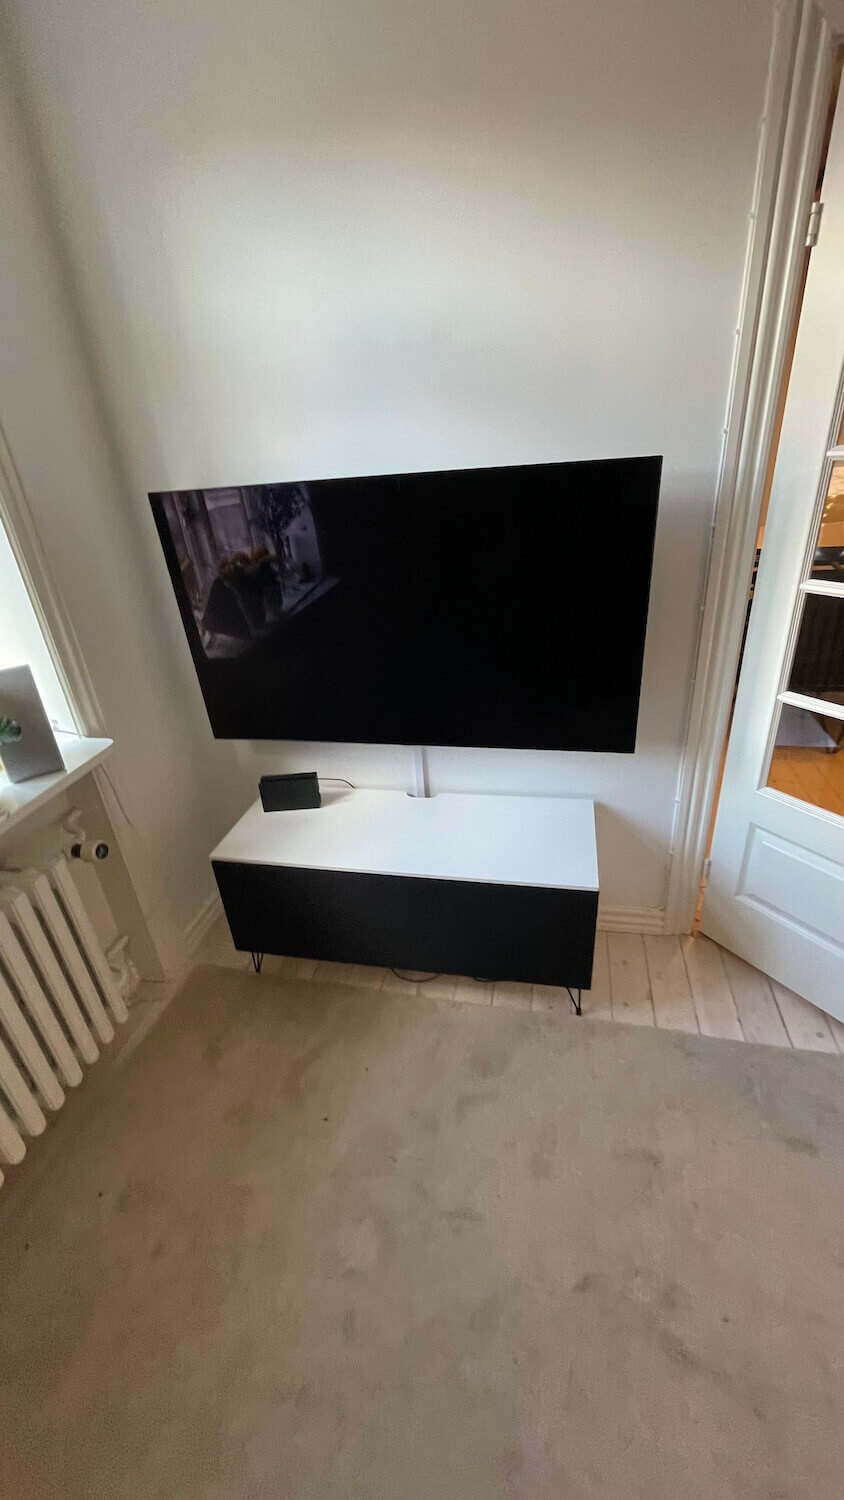 Væg-ophængning af LG OLED TV